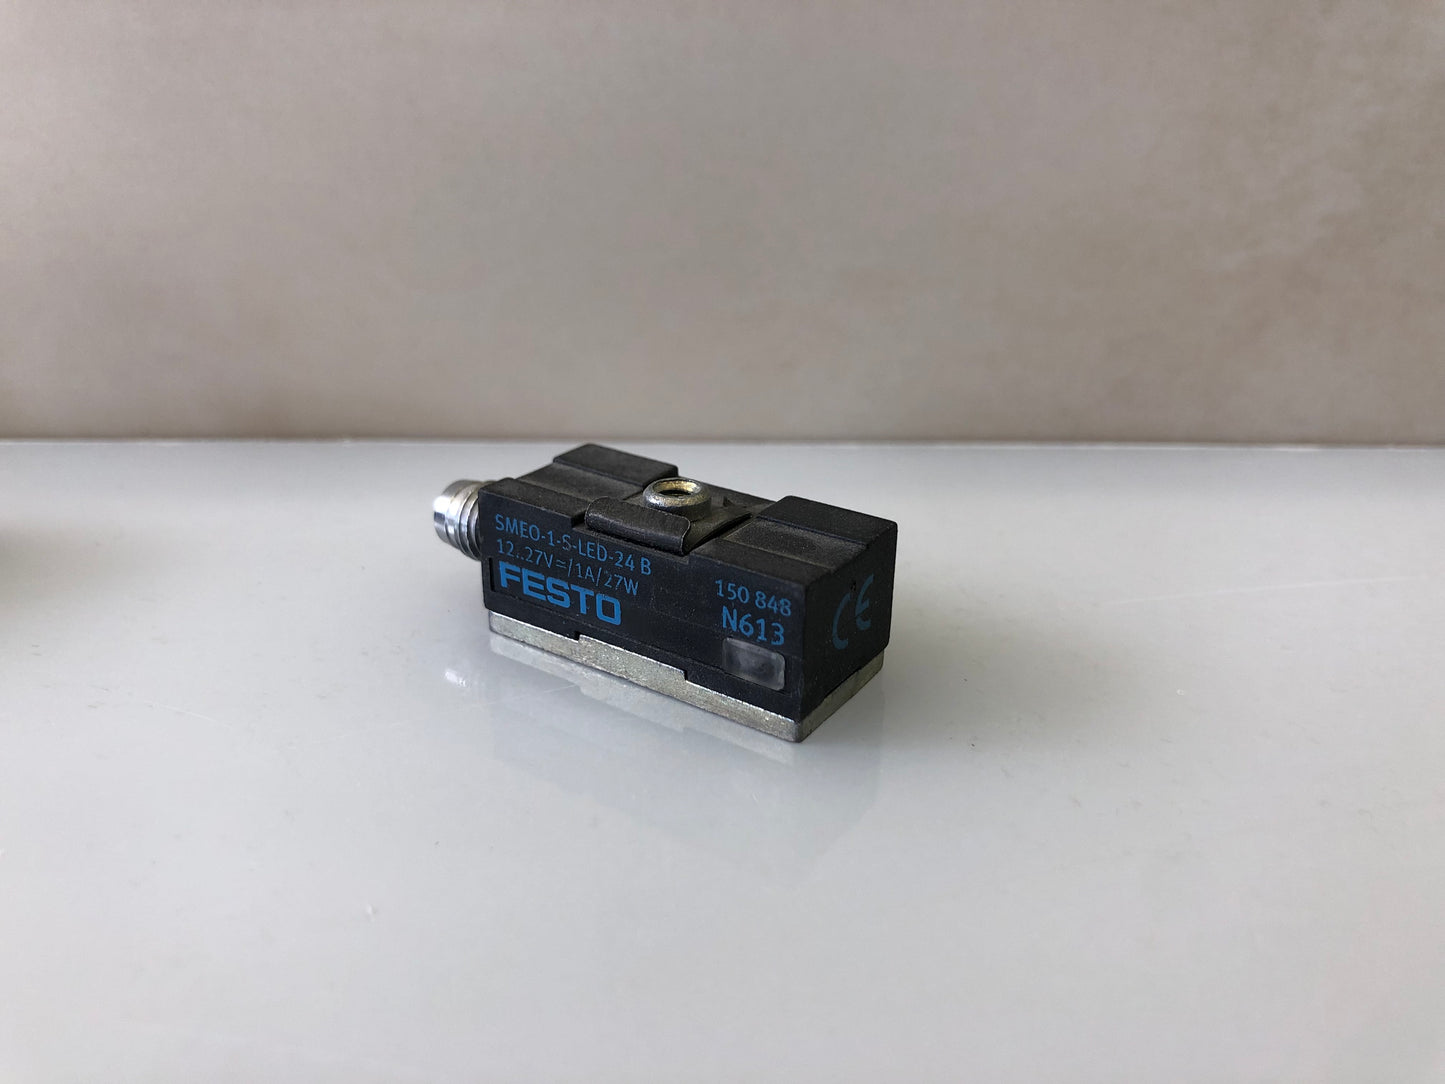 Festo SMEO-1-S-LED-24 B Proximity Sensors Festo SMEO-1-S-LED-24-B 12-27V